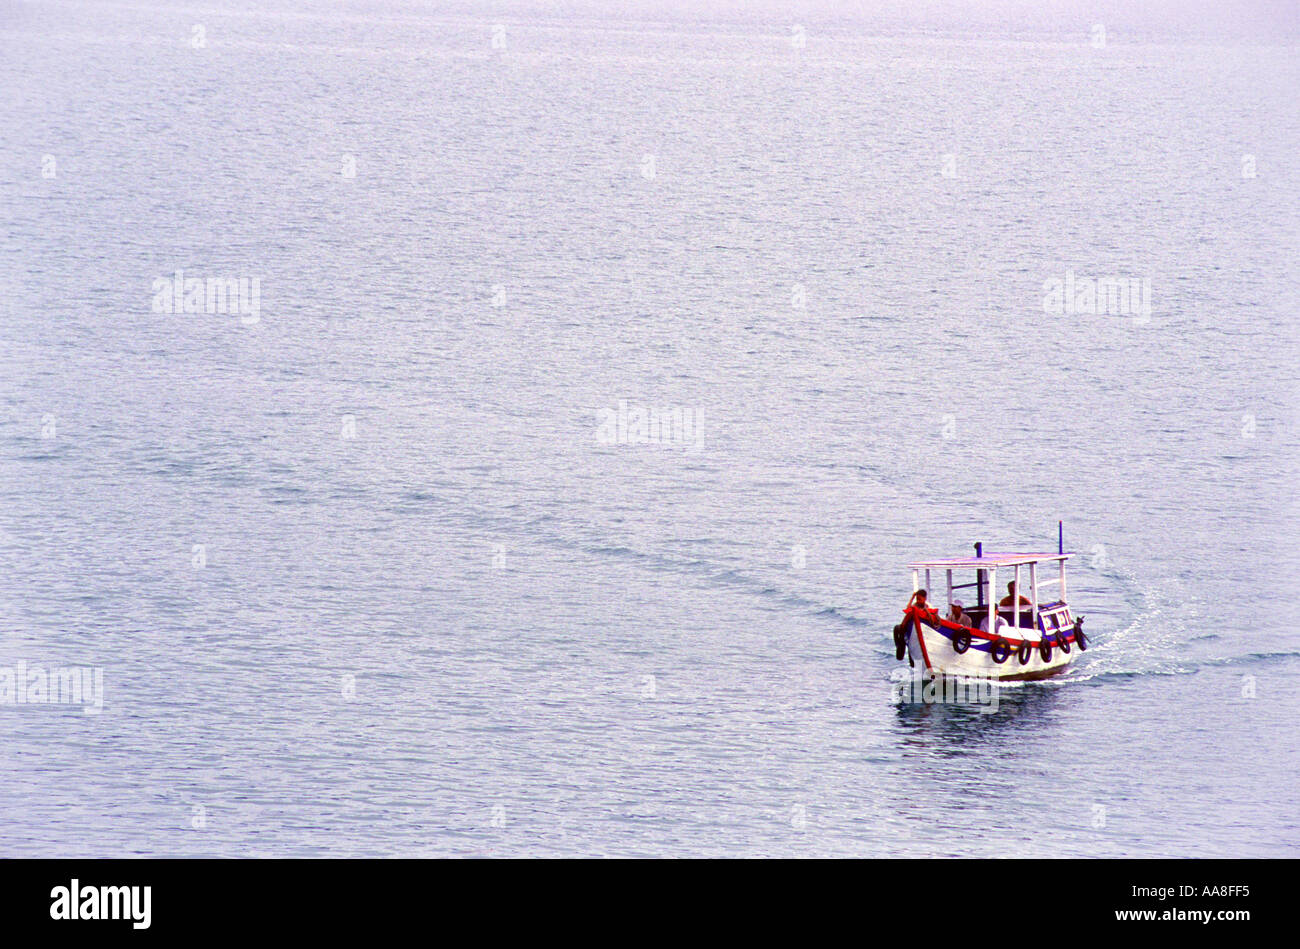 Ein einsamer bunte hölzerne Motorboot macht eine scharfe Kurve auf dem Wasser aus Nha Trang in Vietnam Asien Stockfoto